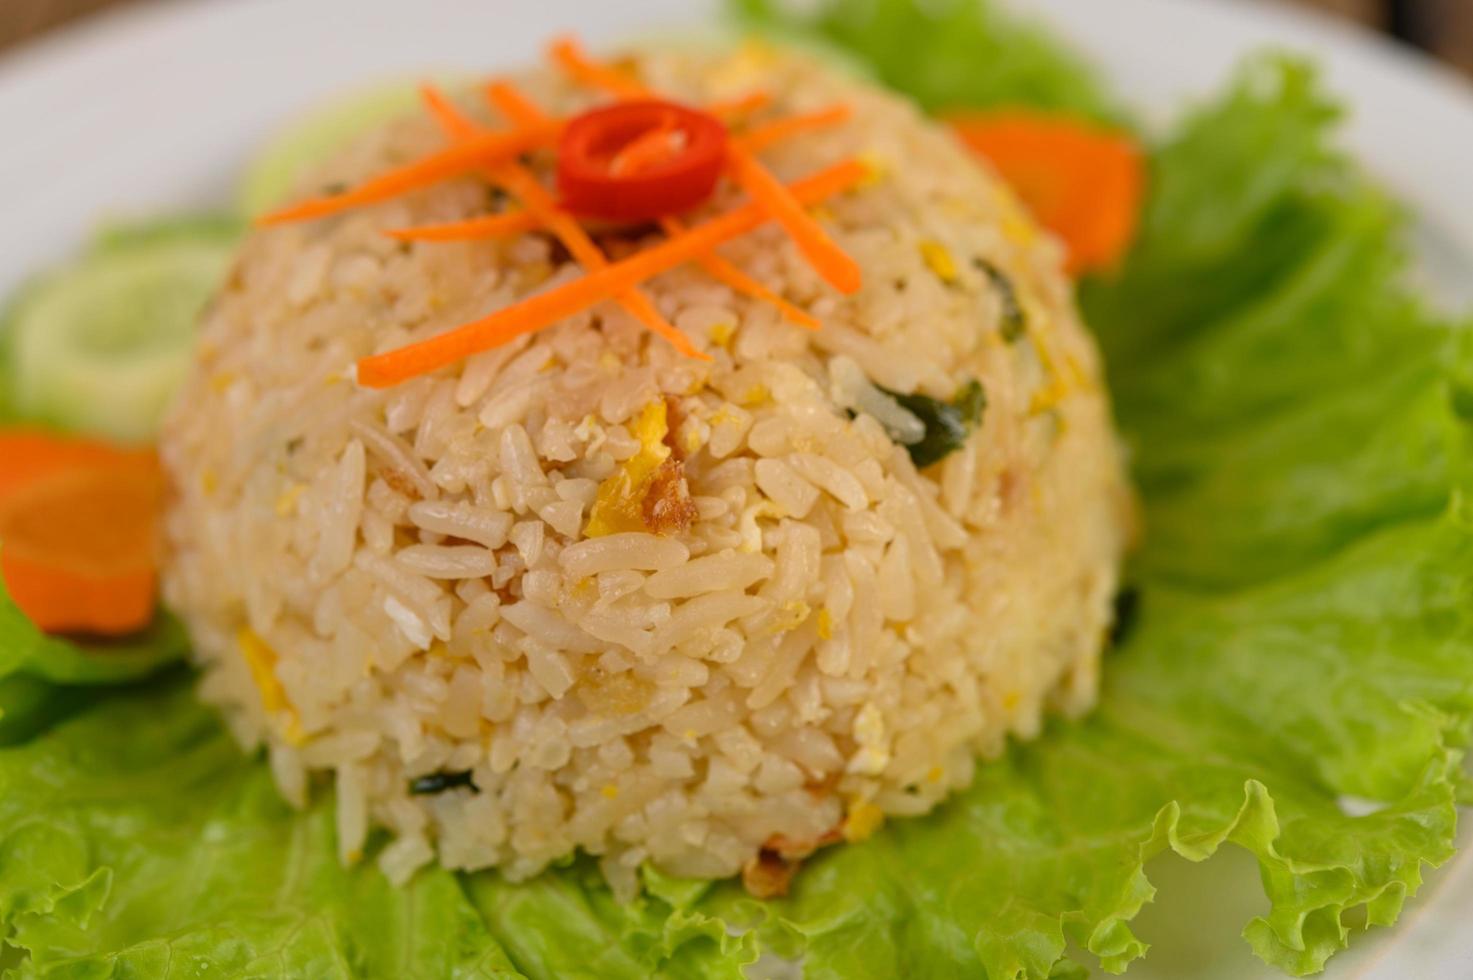 arroz frito em um prato branco com alface e enfeite foto